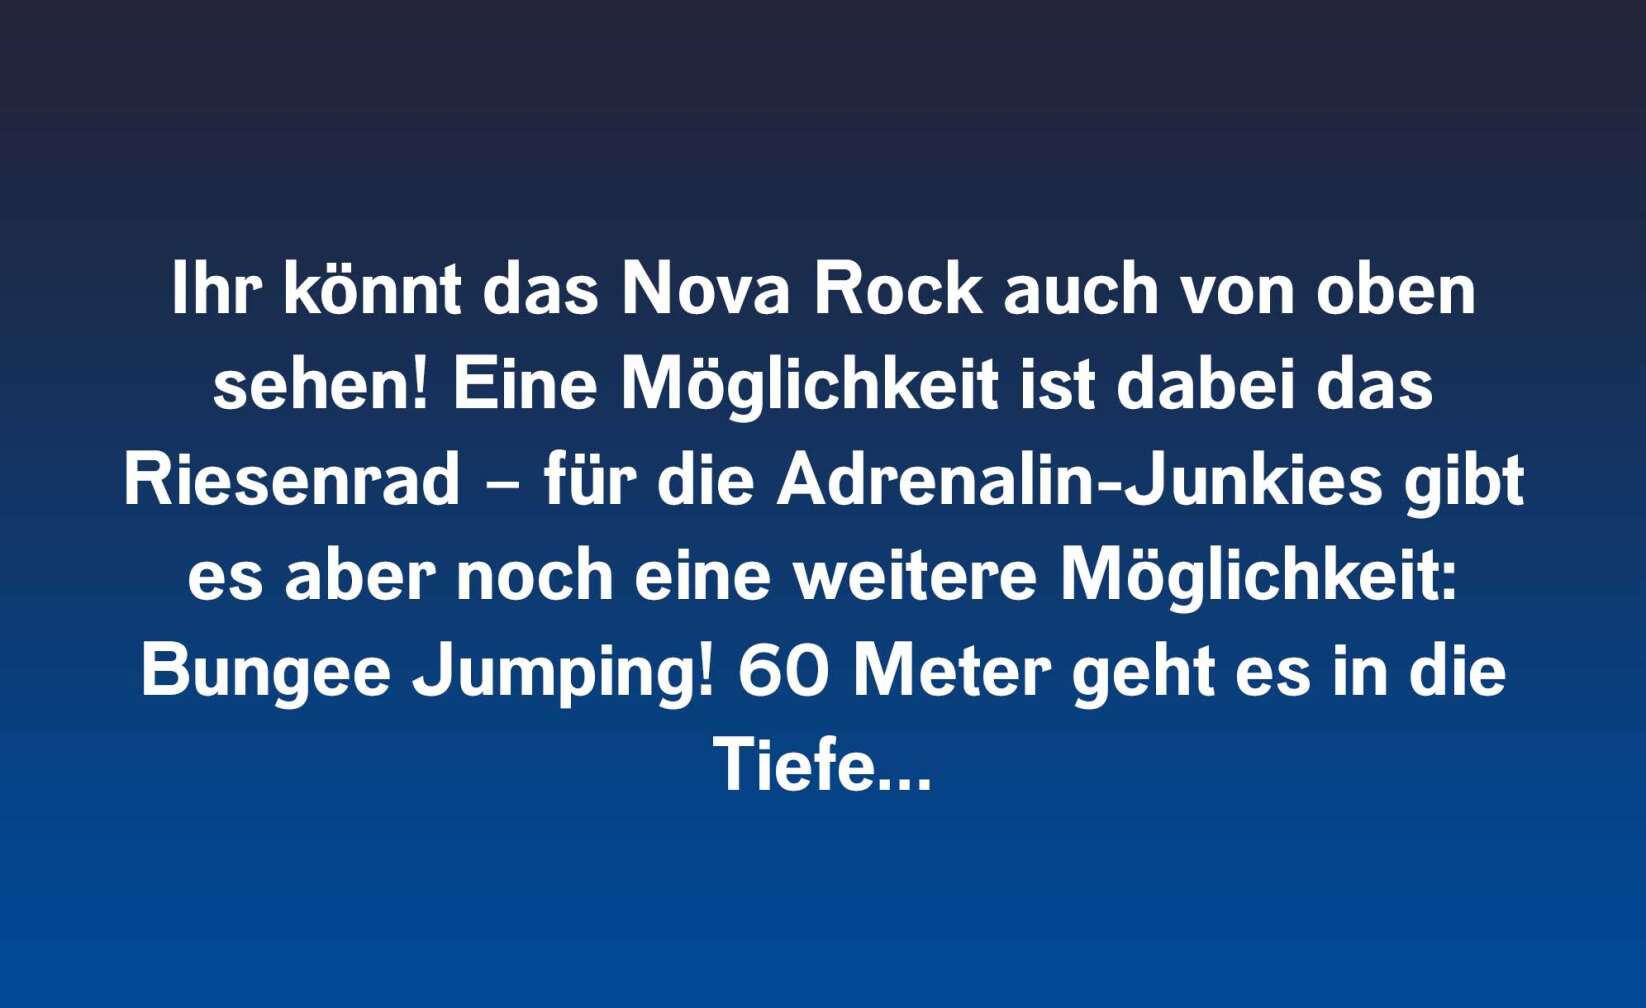 Ihr könnt das Nova Rock auch von oben sehen! Eine Möglichkeit ist dabei das Riesenrad – für die Adrenalin-Junkies gibt es aber noch eine weitere Möglichkeit: Bungee Jumping! 60 Meter geht es in die Tiefe…